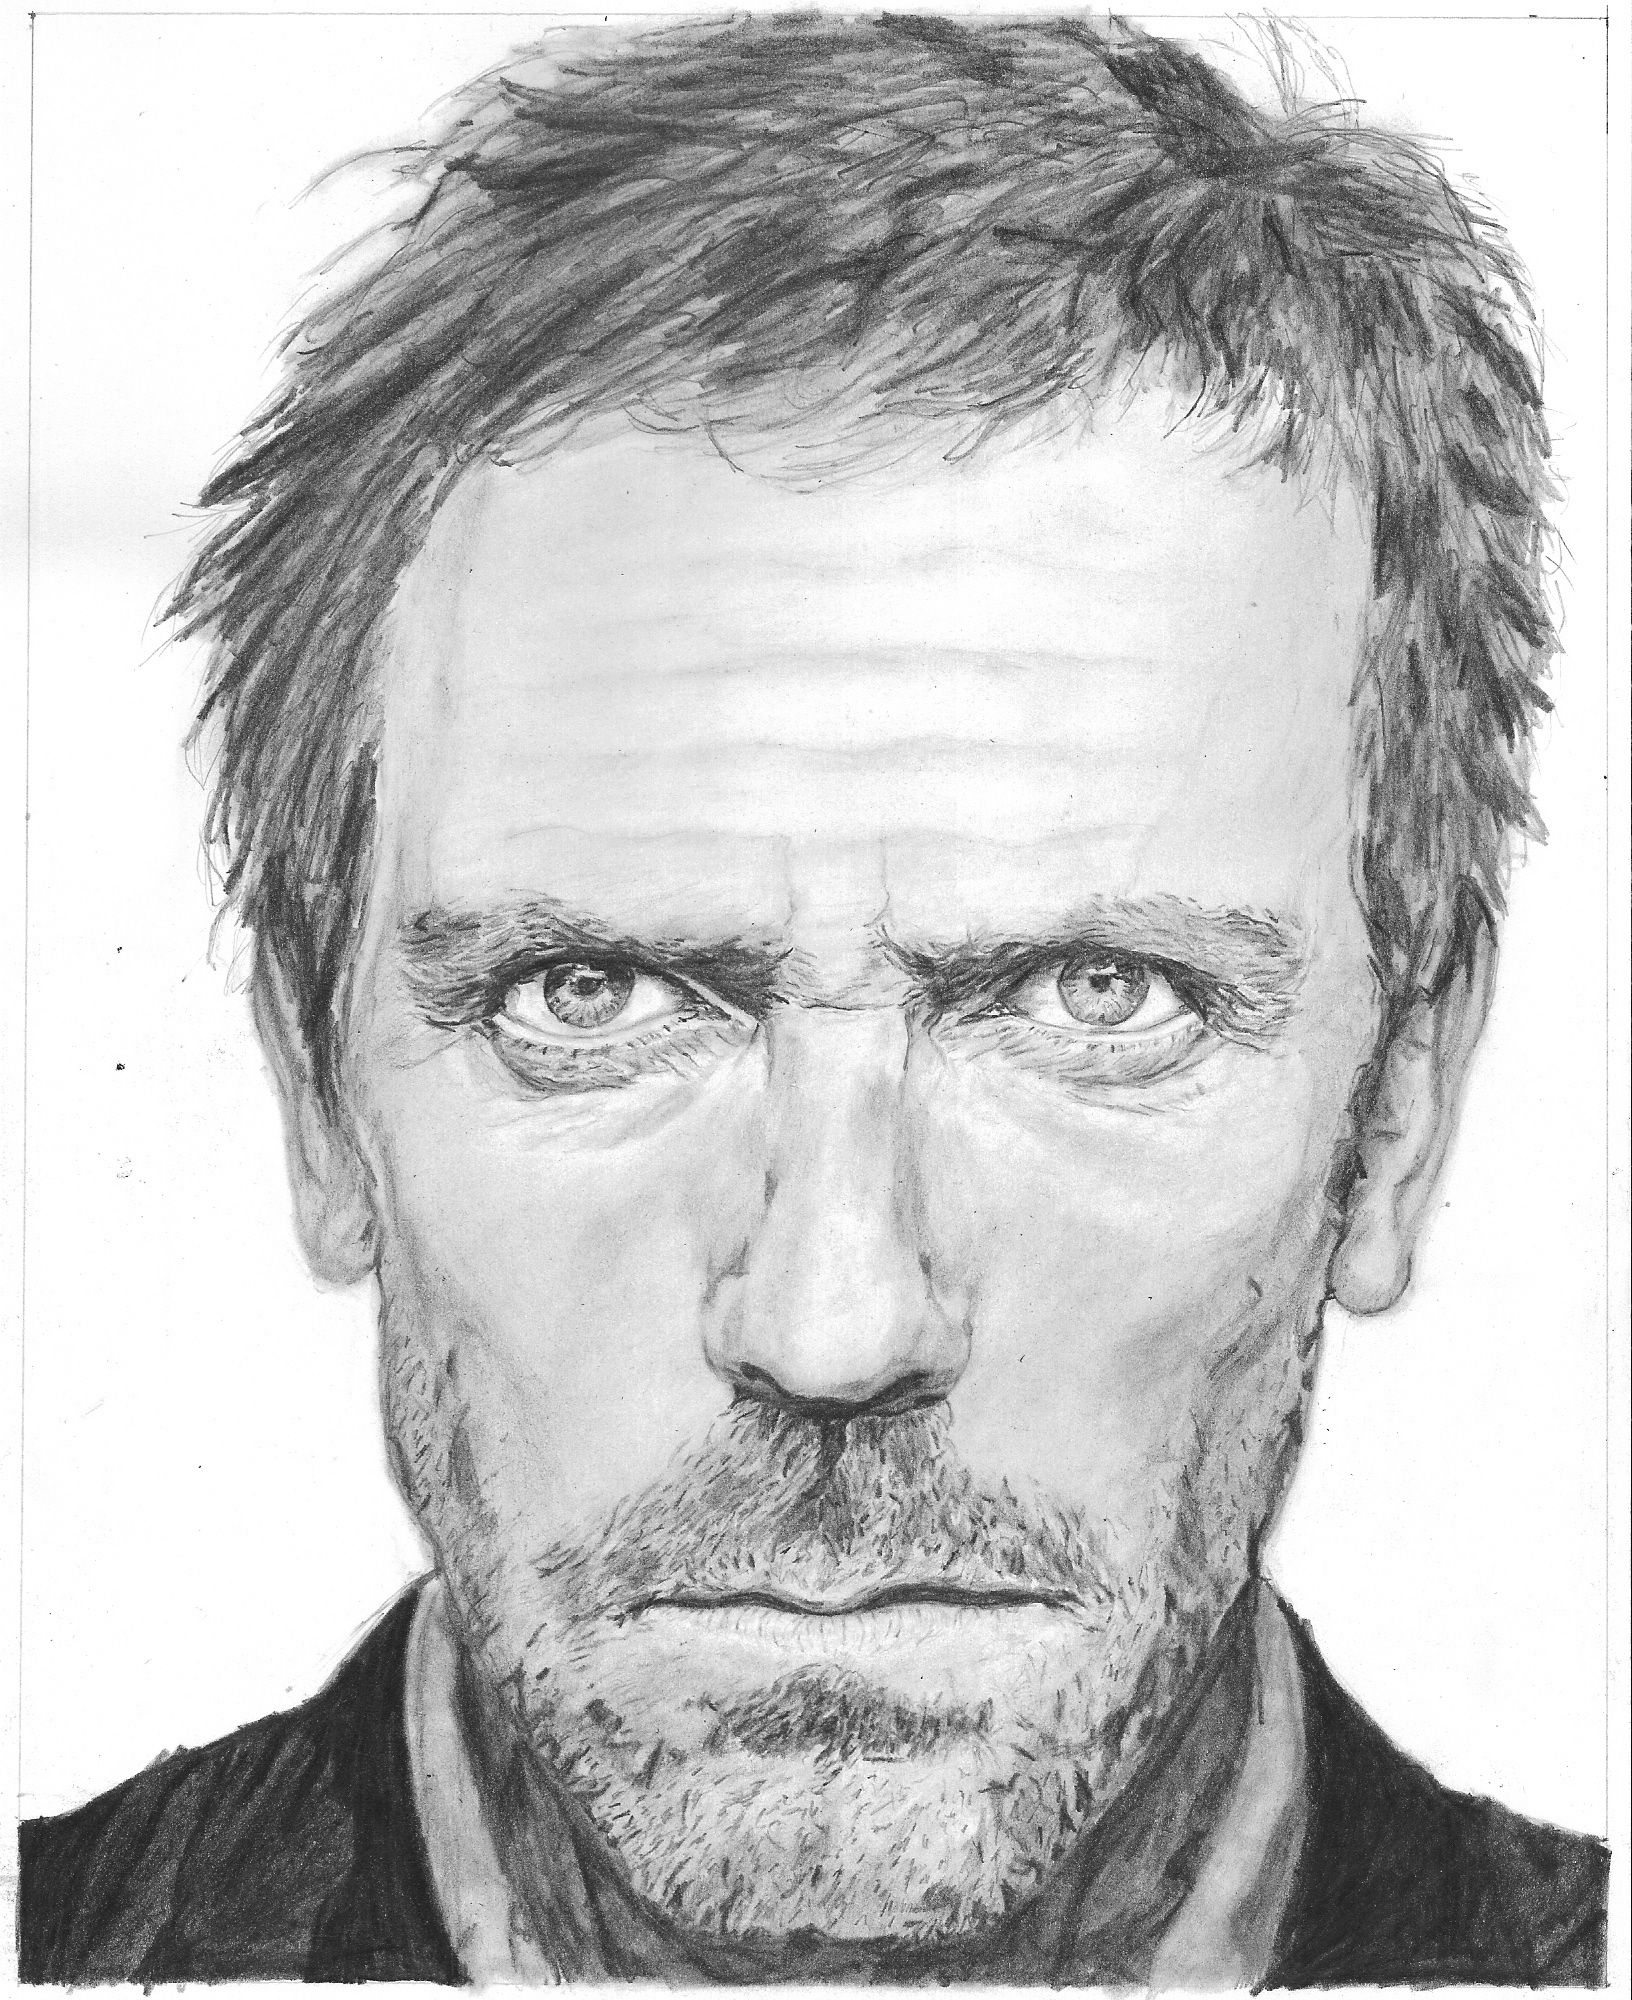 Hugh Laurie Drawing Sketch